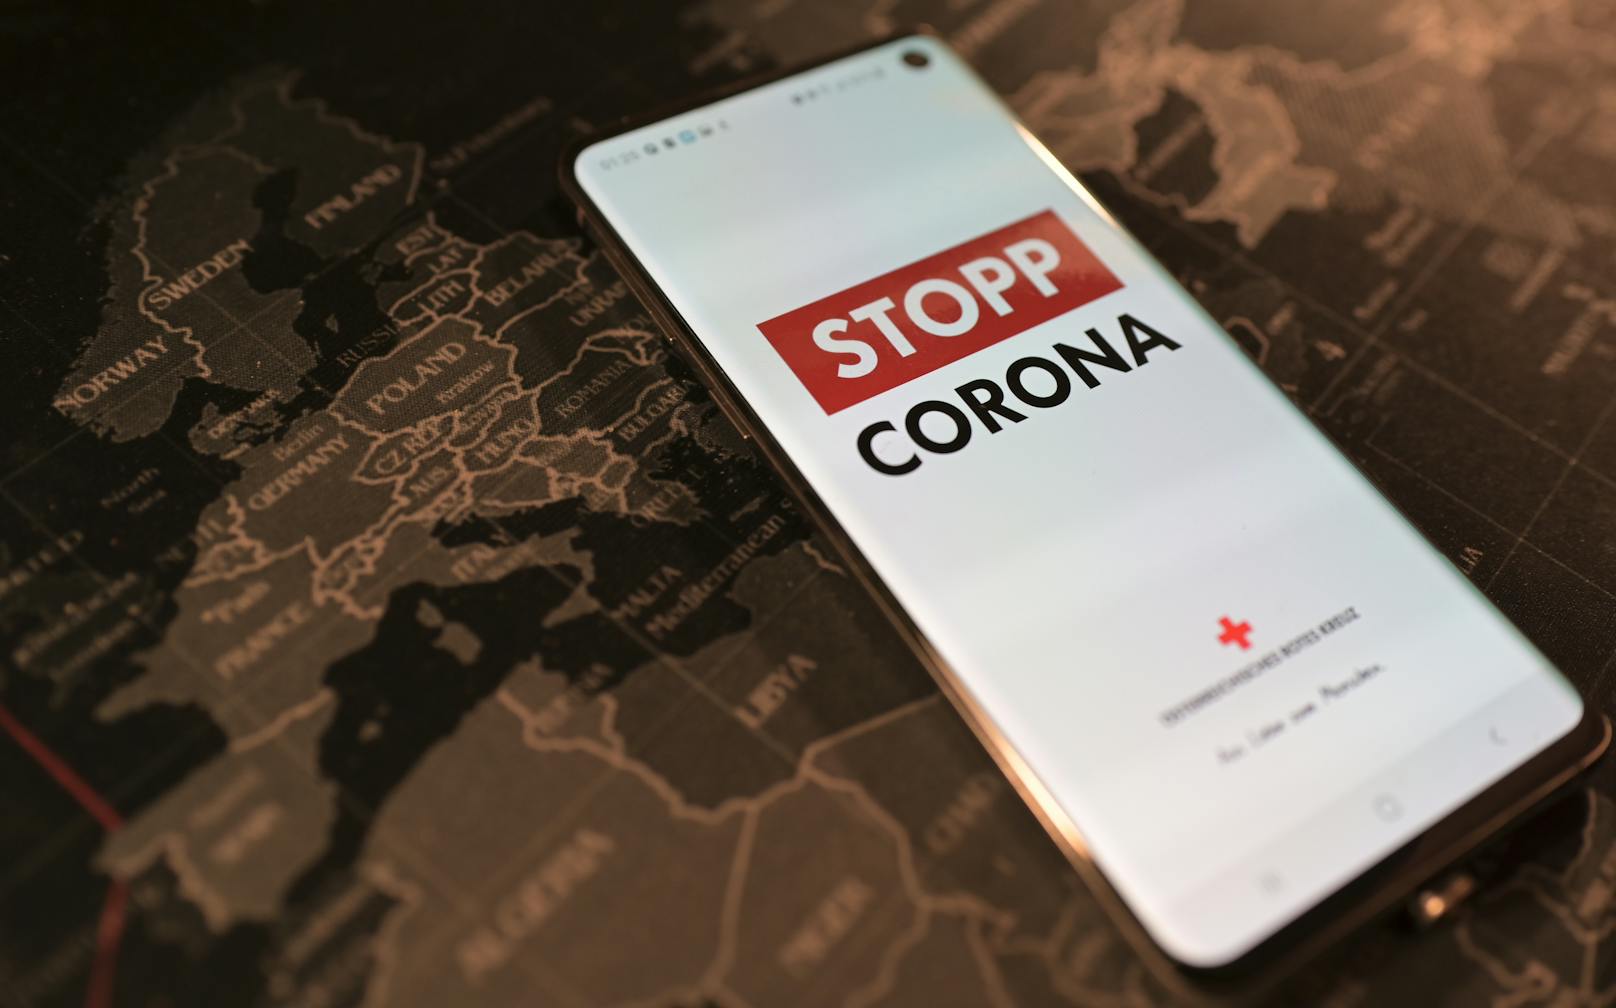 Die "Stopp Corona App"